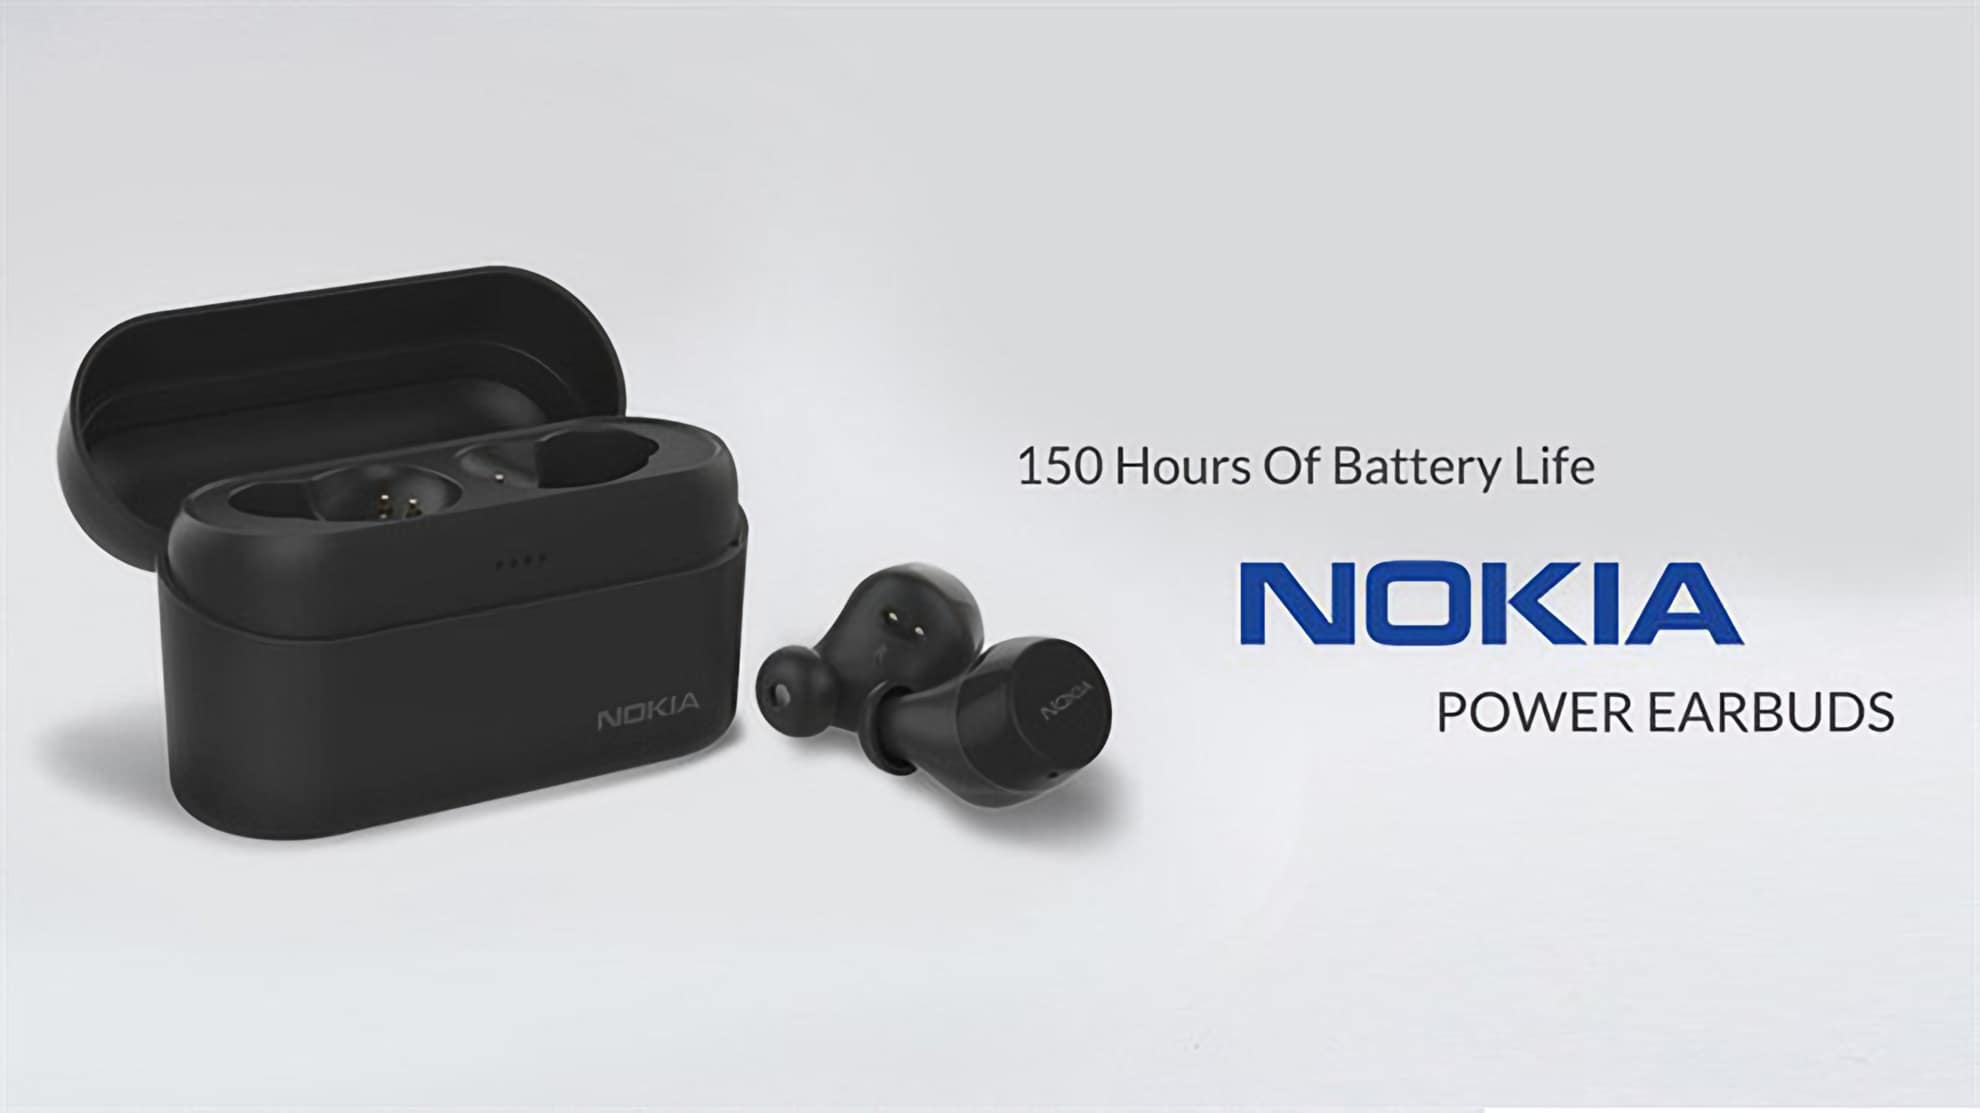 Nokia chính thức ra mắt tai nghe true wireless Power Earbuds, có kháng nước, pin 150 giờ